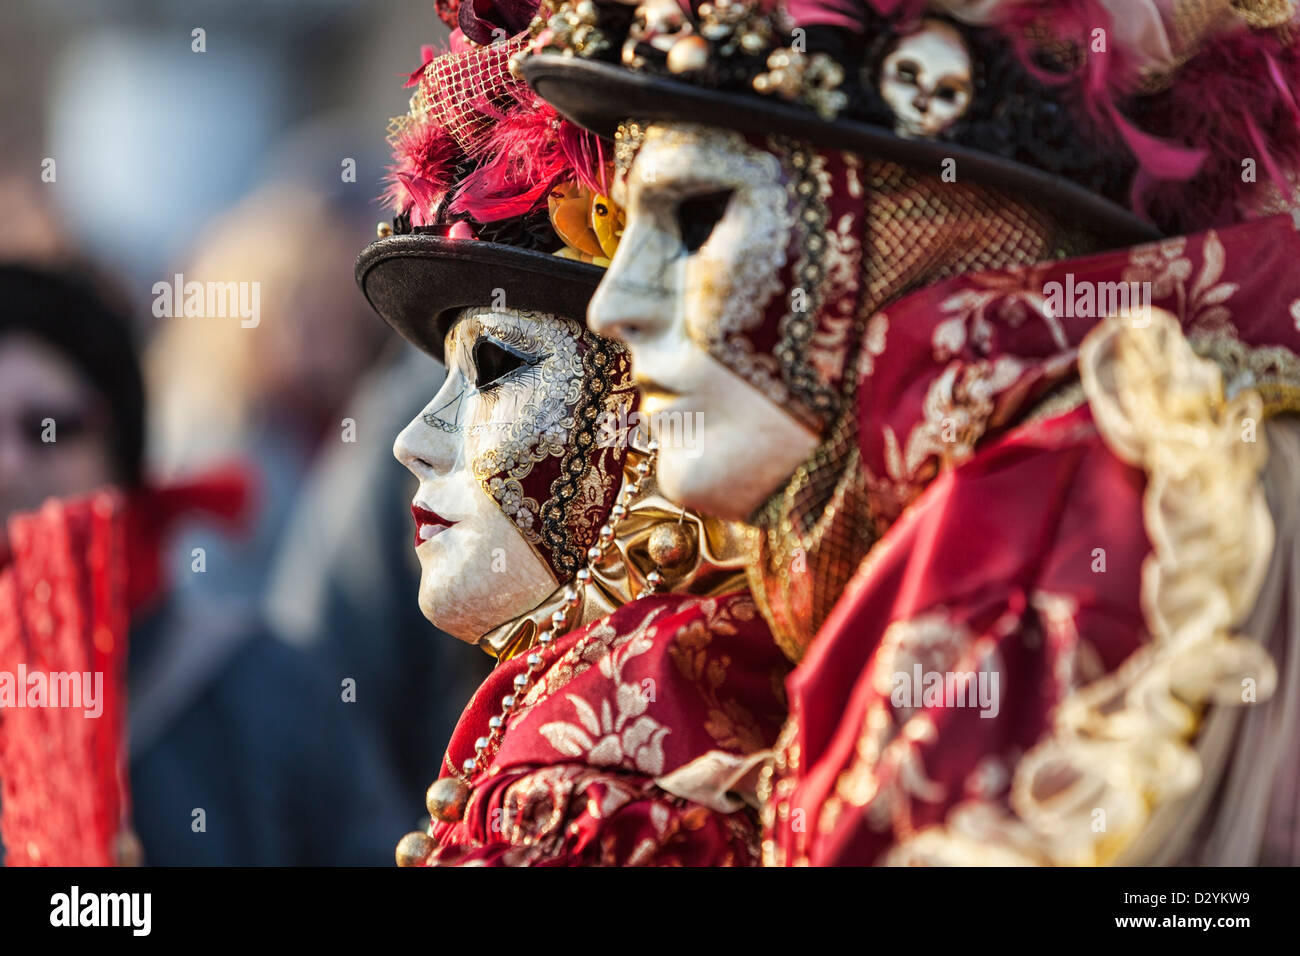 Ökologische Porträt zweier Personen, die schönen bunten Kostümen und Masken tragen, während der Karneval von Venedig. Stockfoto